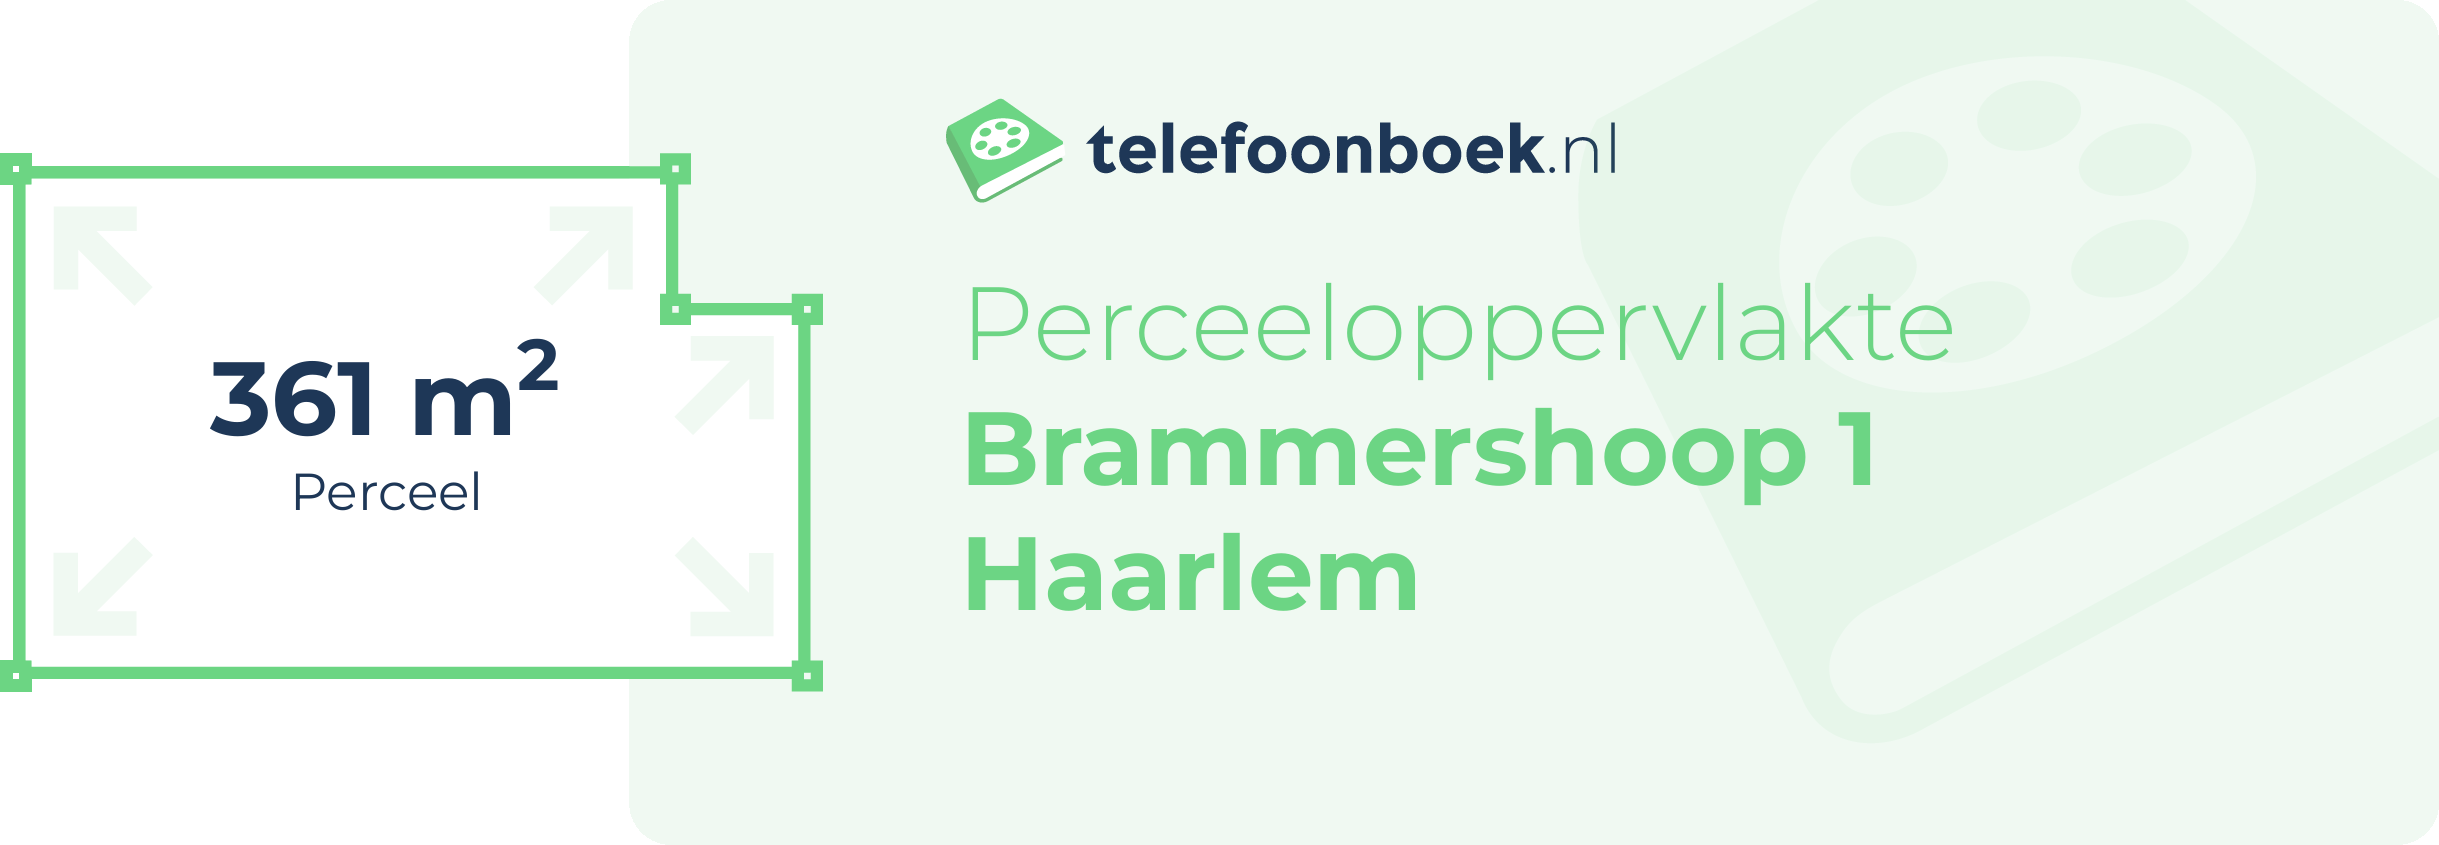 Perceeloppervlakte Brammershoop 1 Haarlem